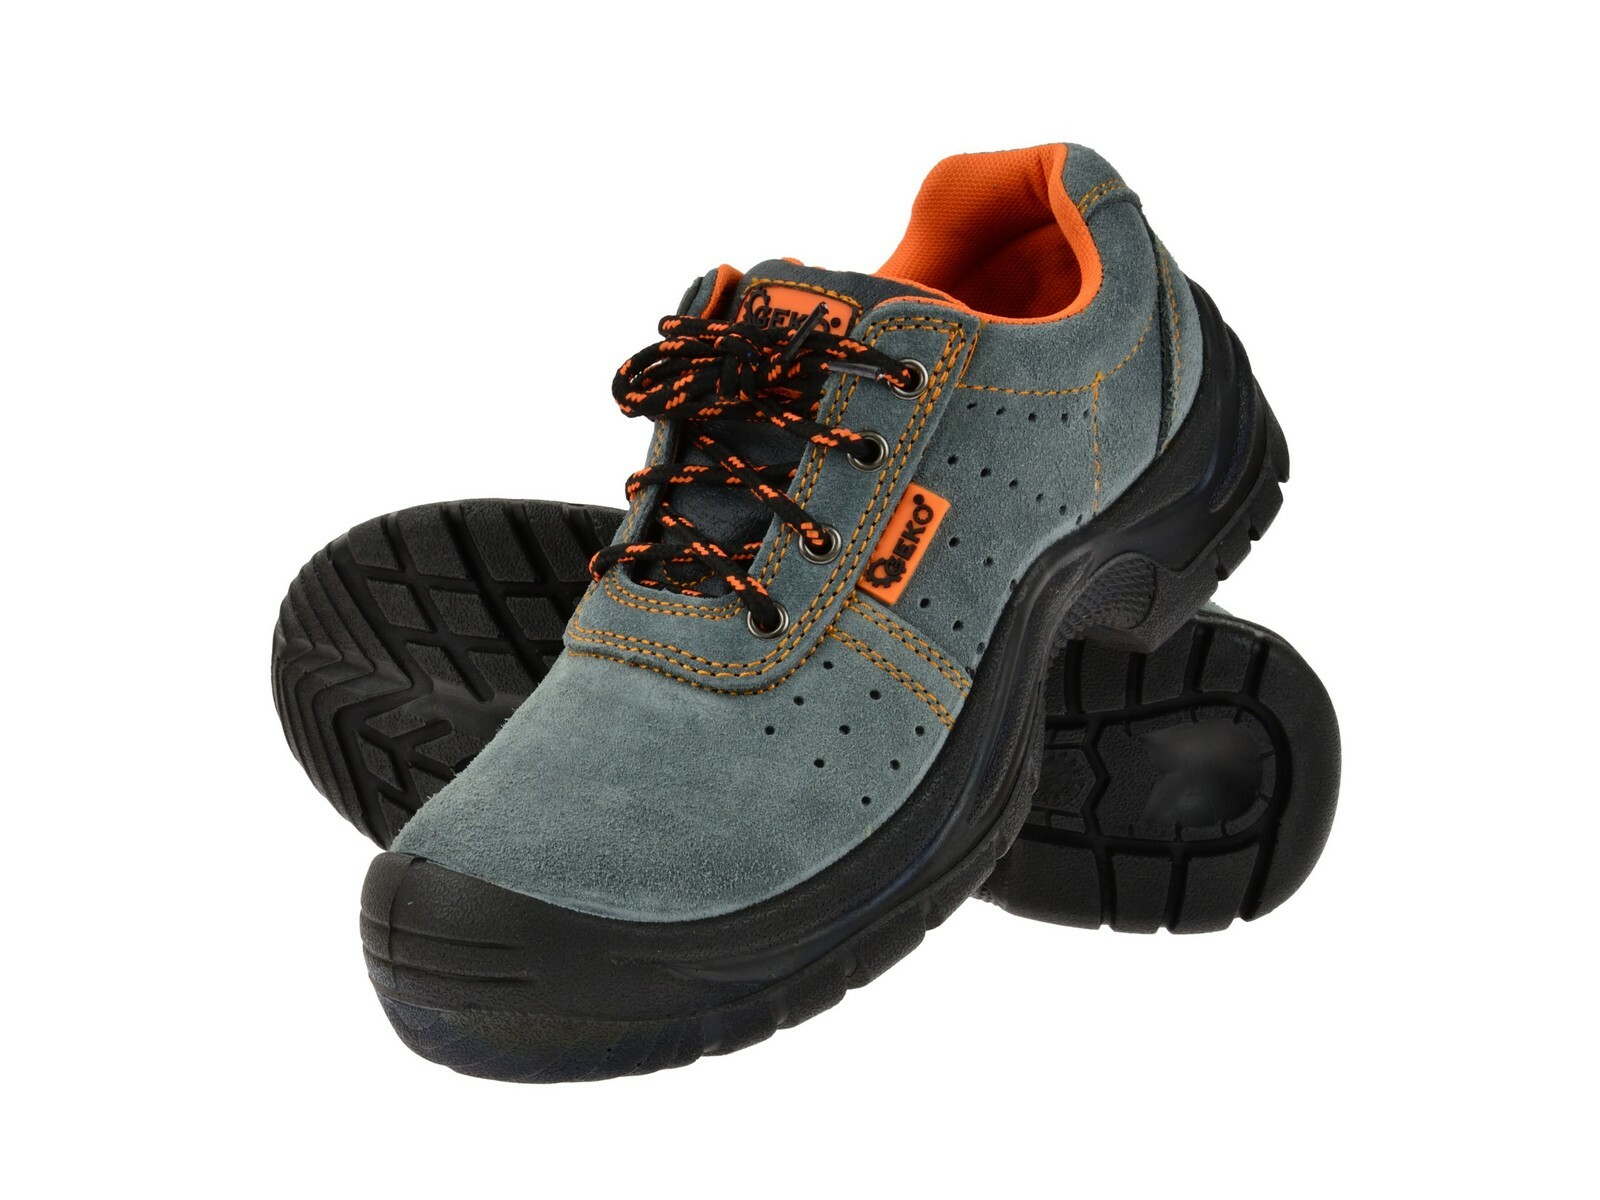 Ochranné pracovní boty semišové model č.3 vel.47 GEKO nářadí G90527 + Dárek, servis bez starostí v hodnotě 300Kč